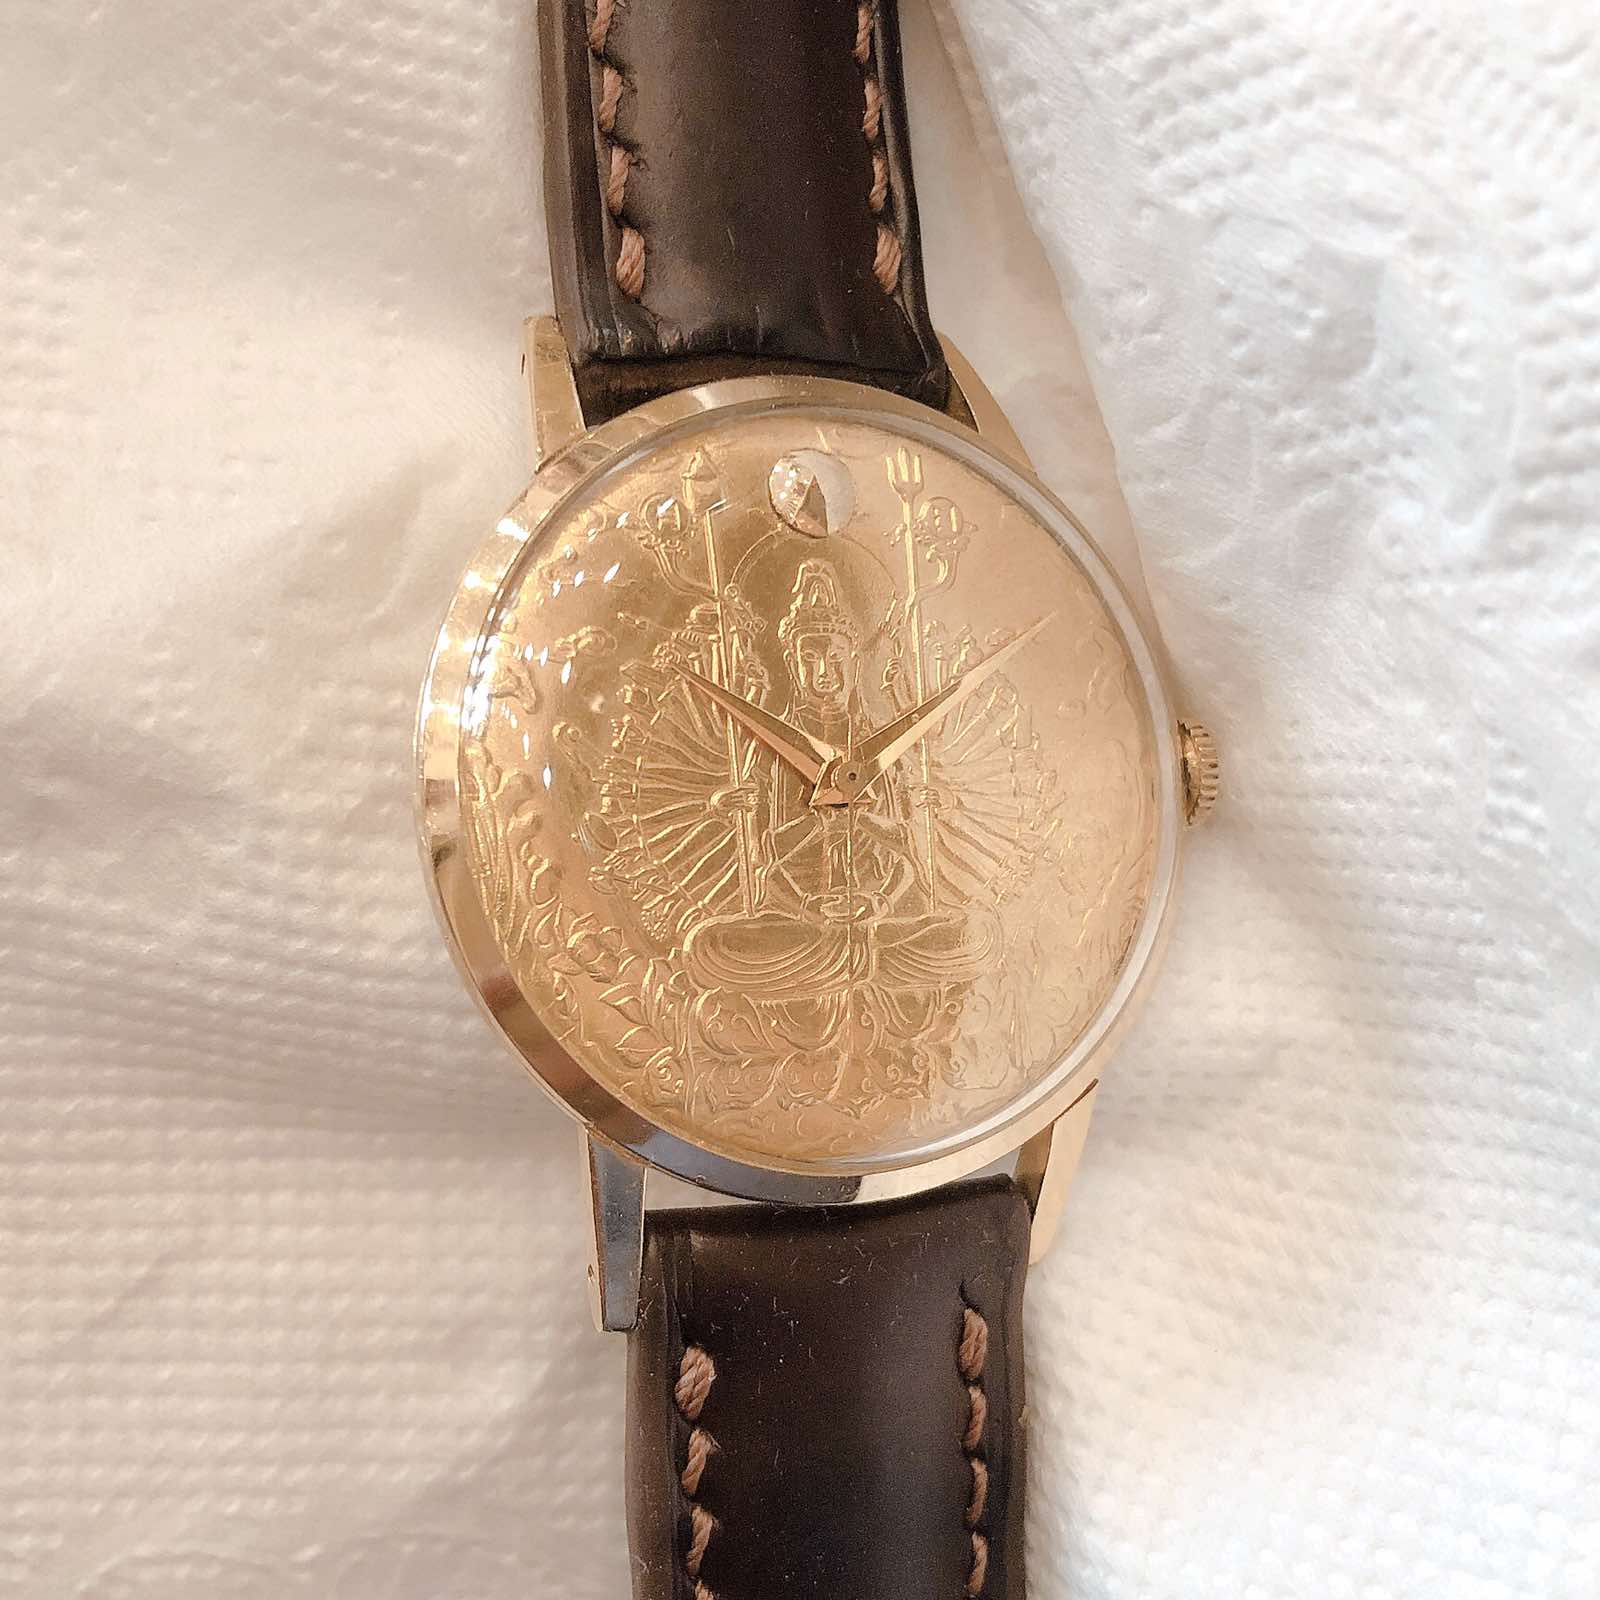 Đồng hồ cổ CITIZEN Deluxe Mặt Phật bọc vàng 14k goldfilled lên dây chính hãng nhật bản